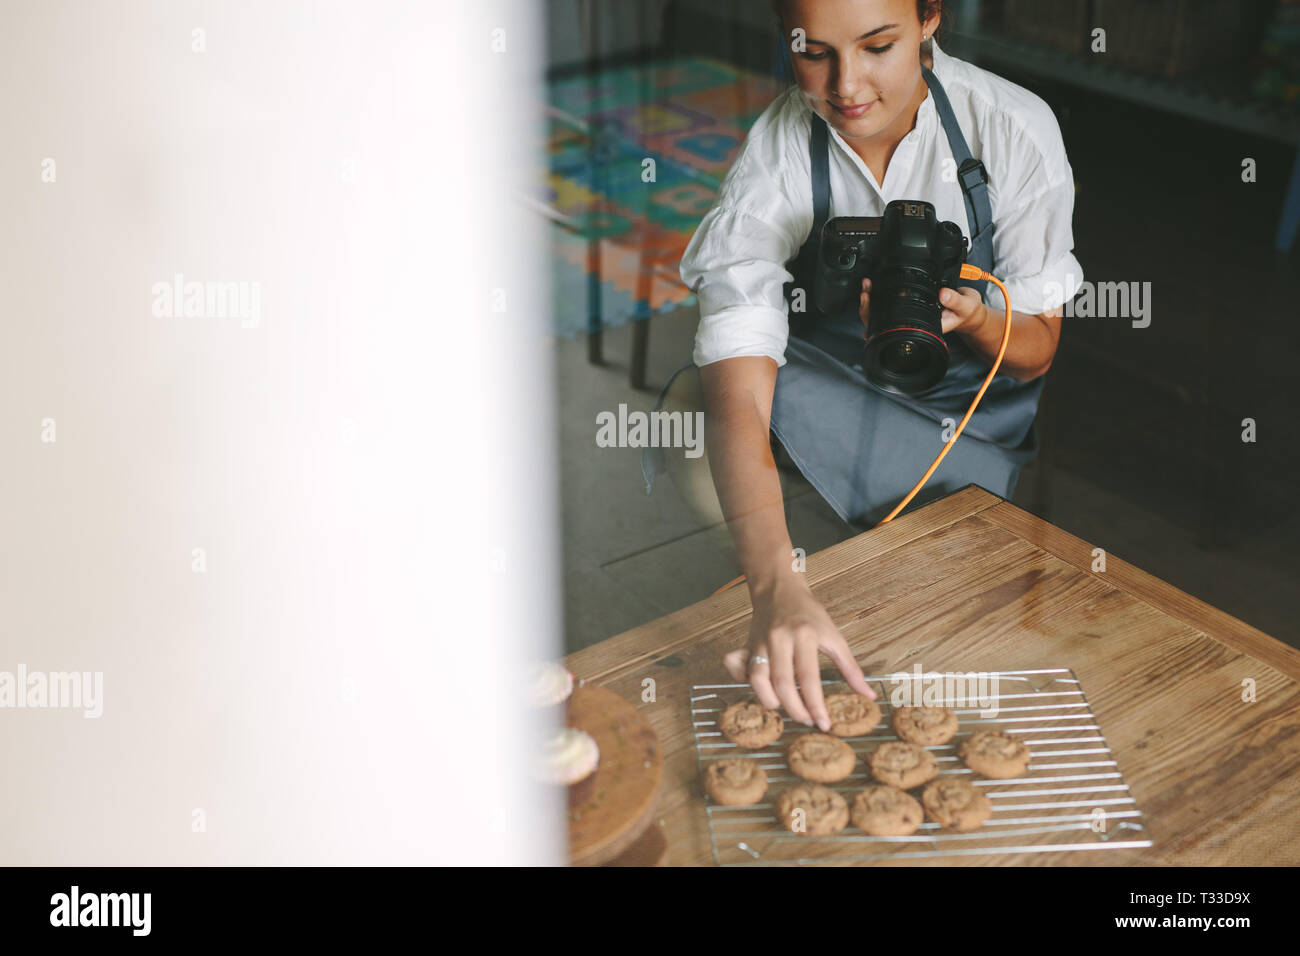 Femme chef à l'intérieur d'une cuisine disposant les cookies sur le grill avec caméra numérique en main. Femme en photographiant l'aire des pâtisseries dans la cuisine. Banque D'Images